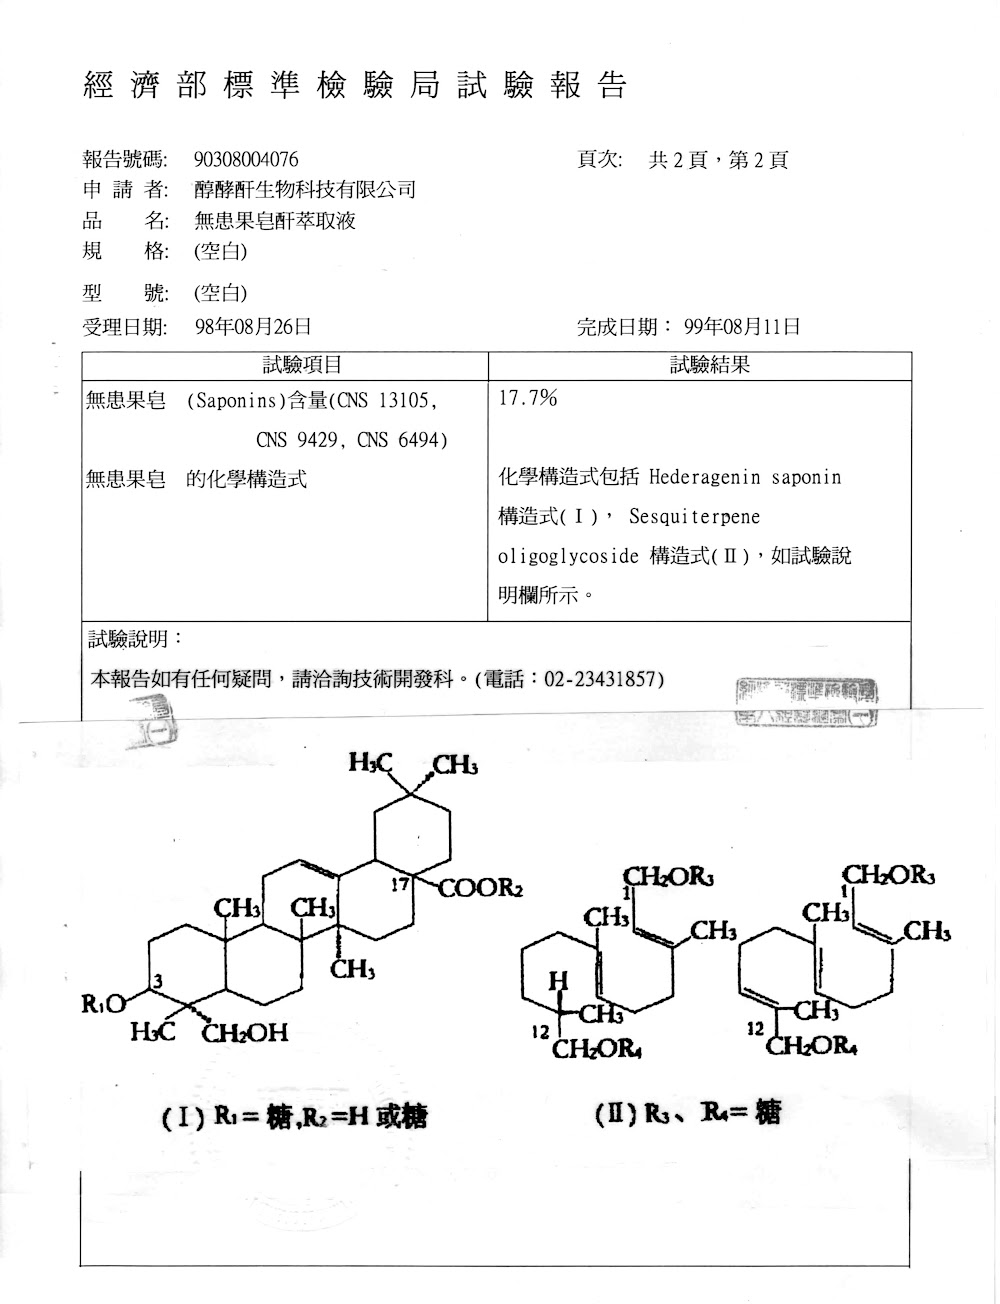 醇酵酐生物科技-無患果萃取液化學式